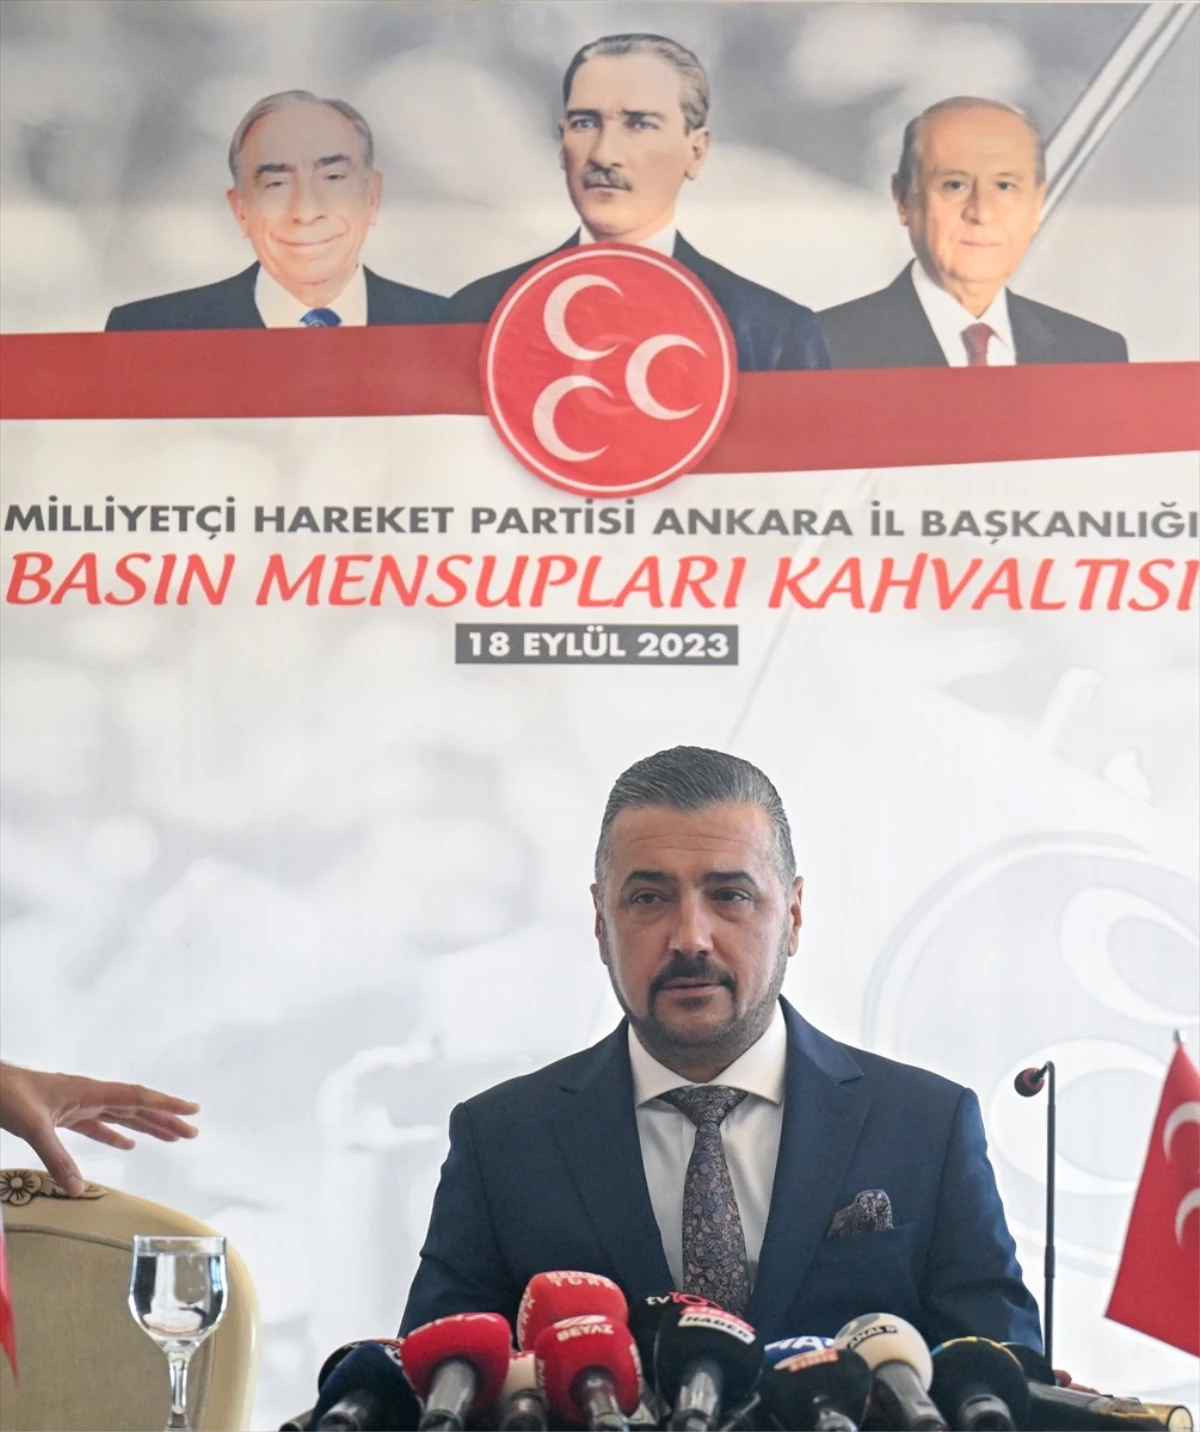 MHP Ankara İl Başkanı Alparslan Doğan: Muhalefet partilerinden istifa ederek MHP'ye 30 bin üye kazandırdık